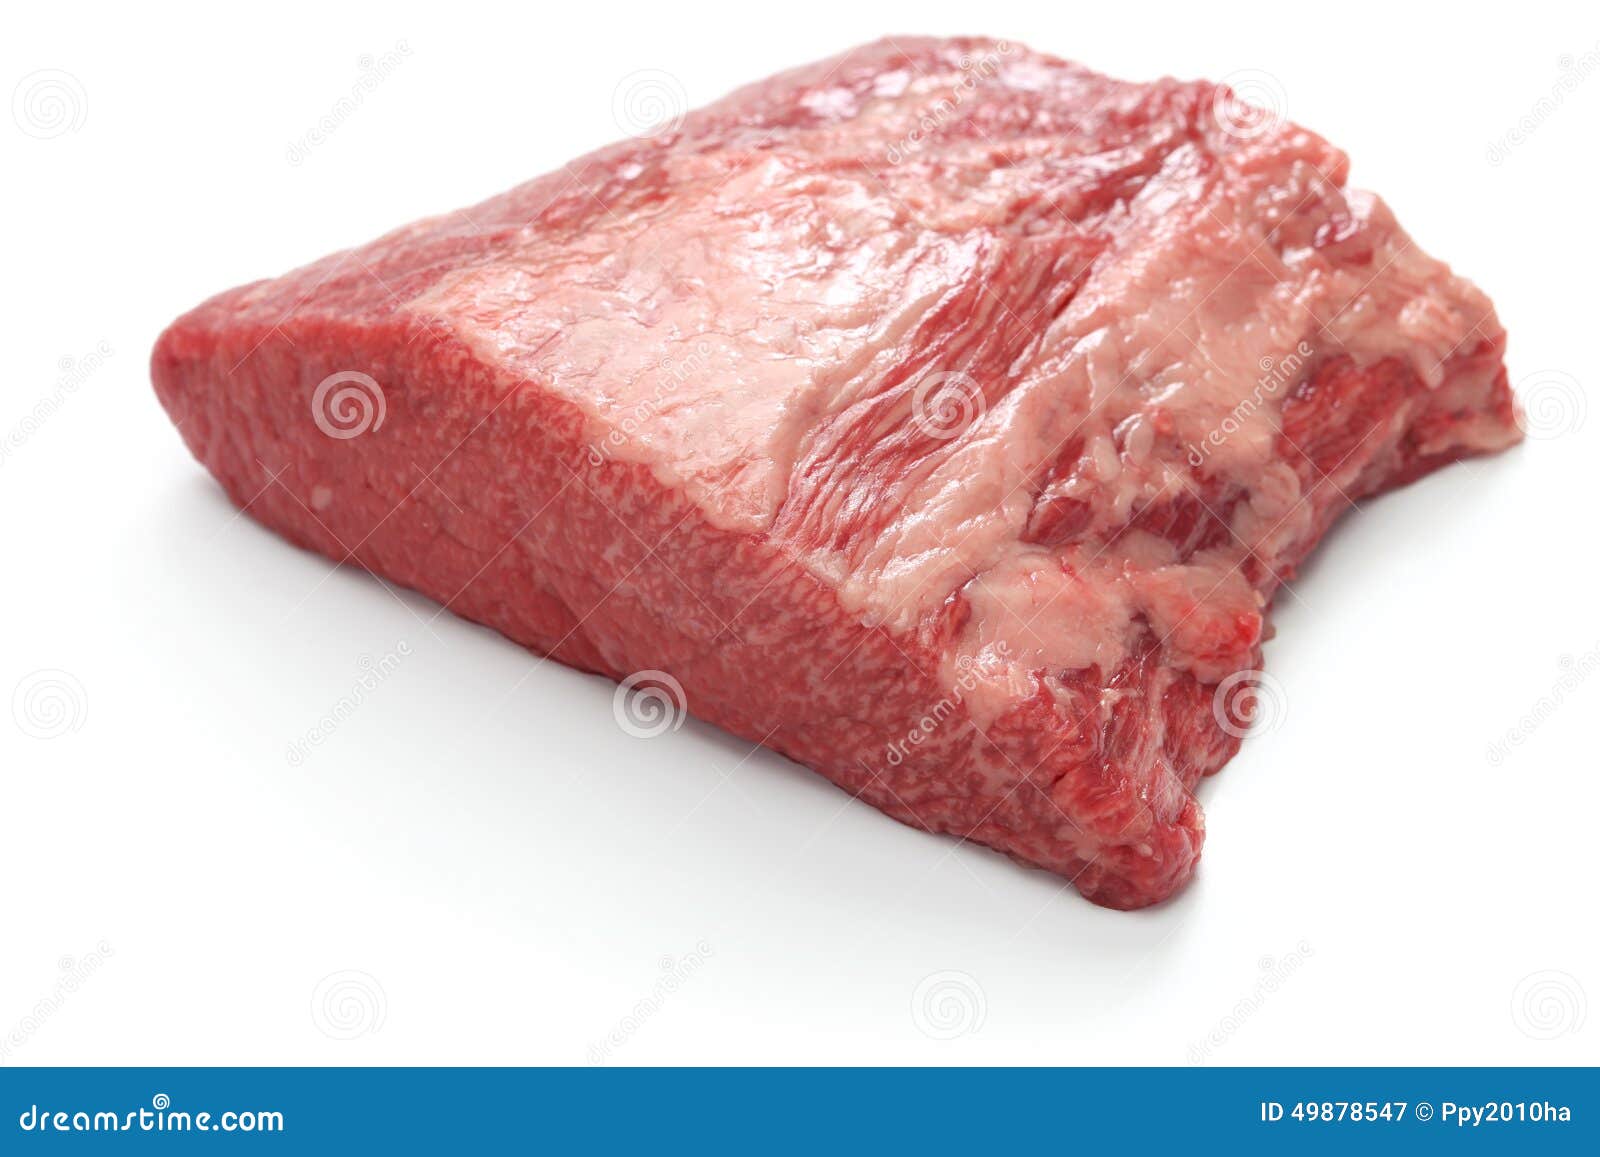 raw beef brisket